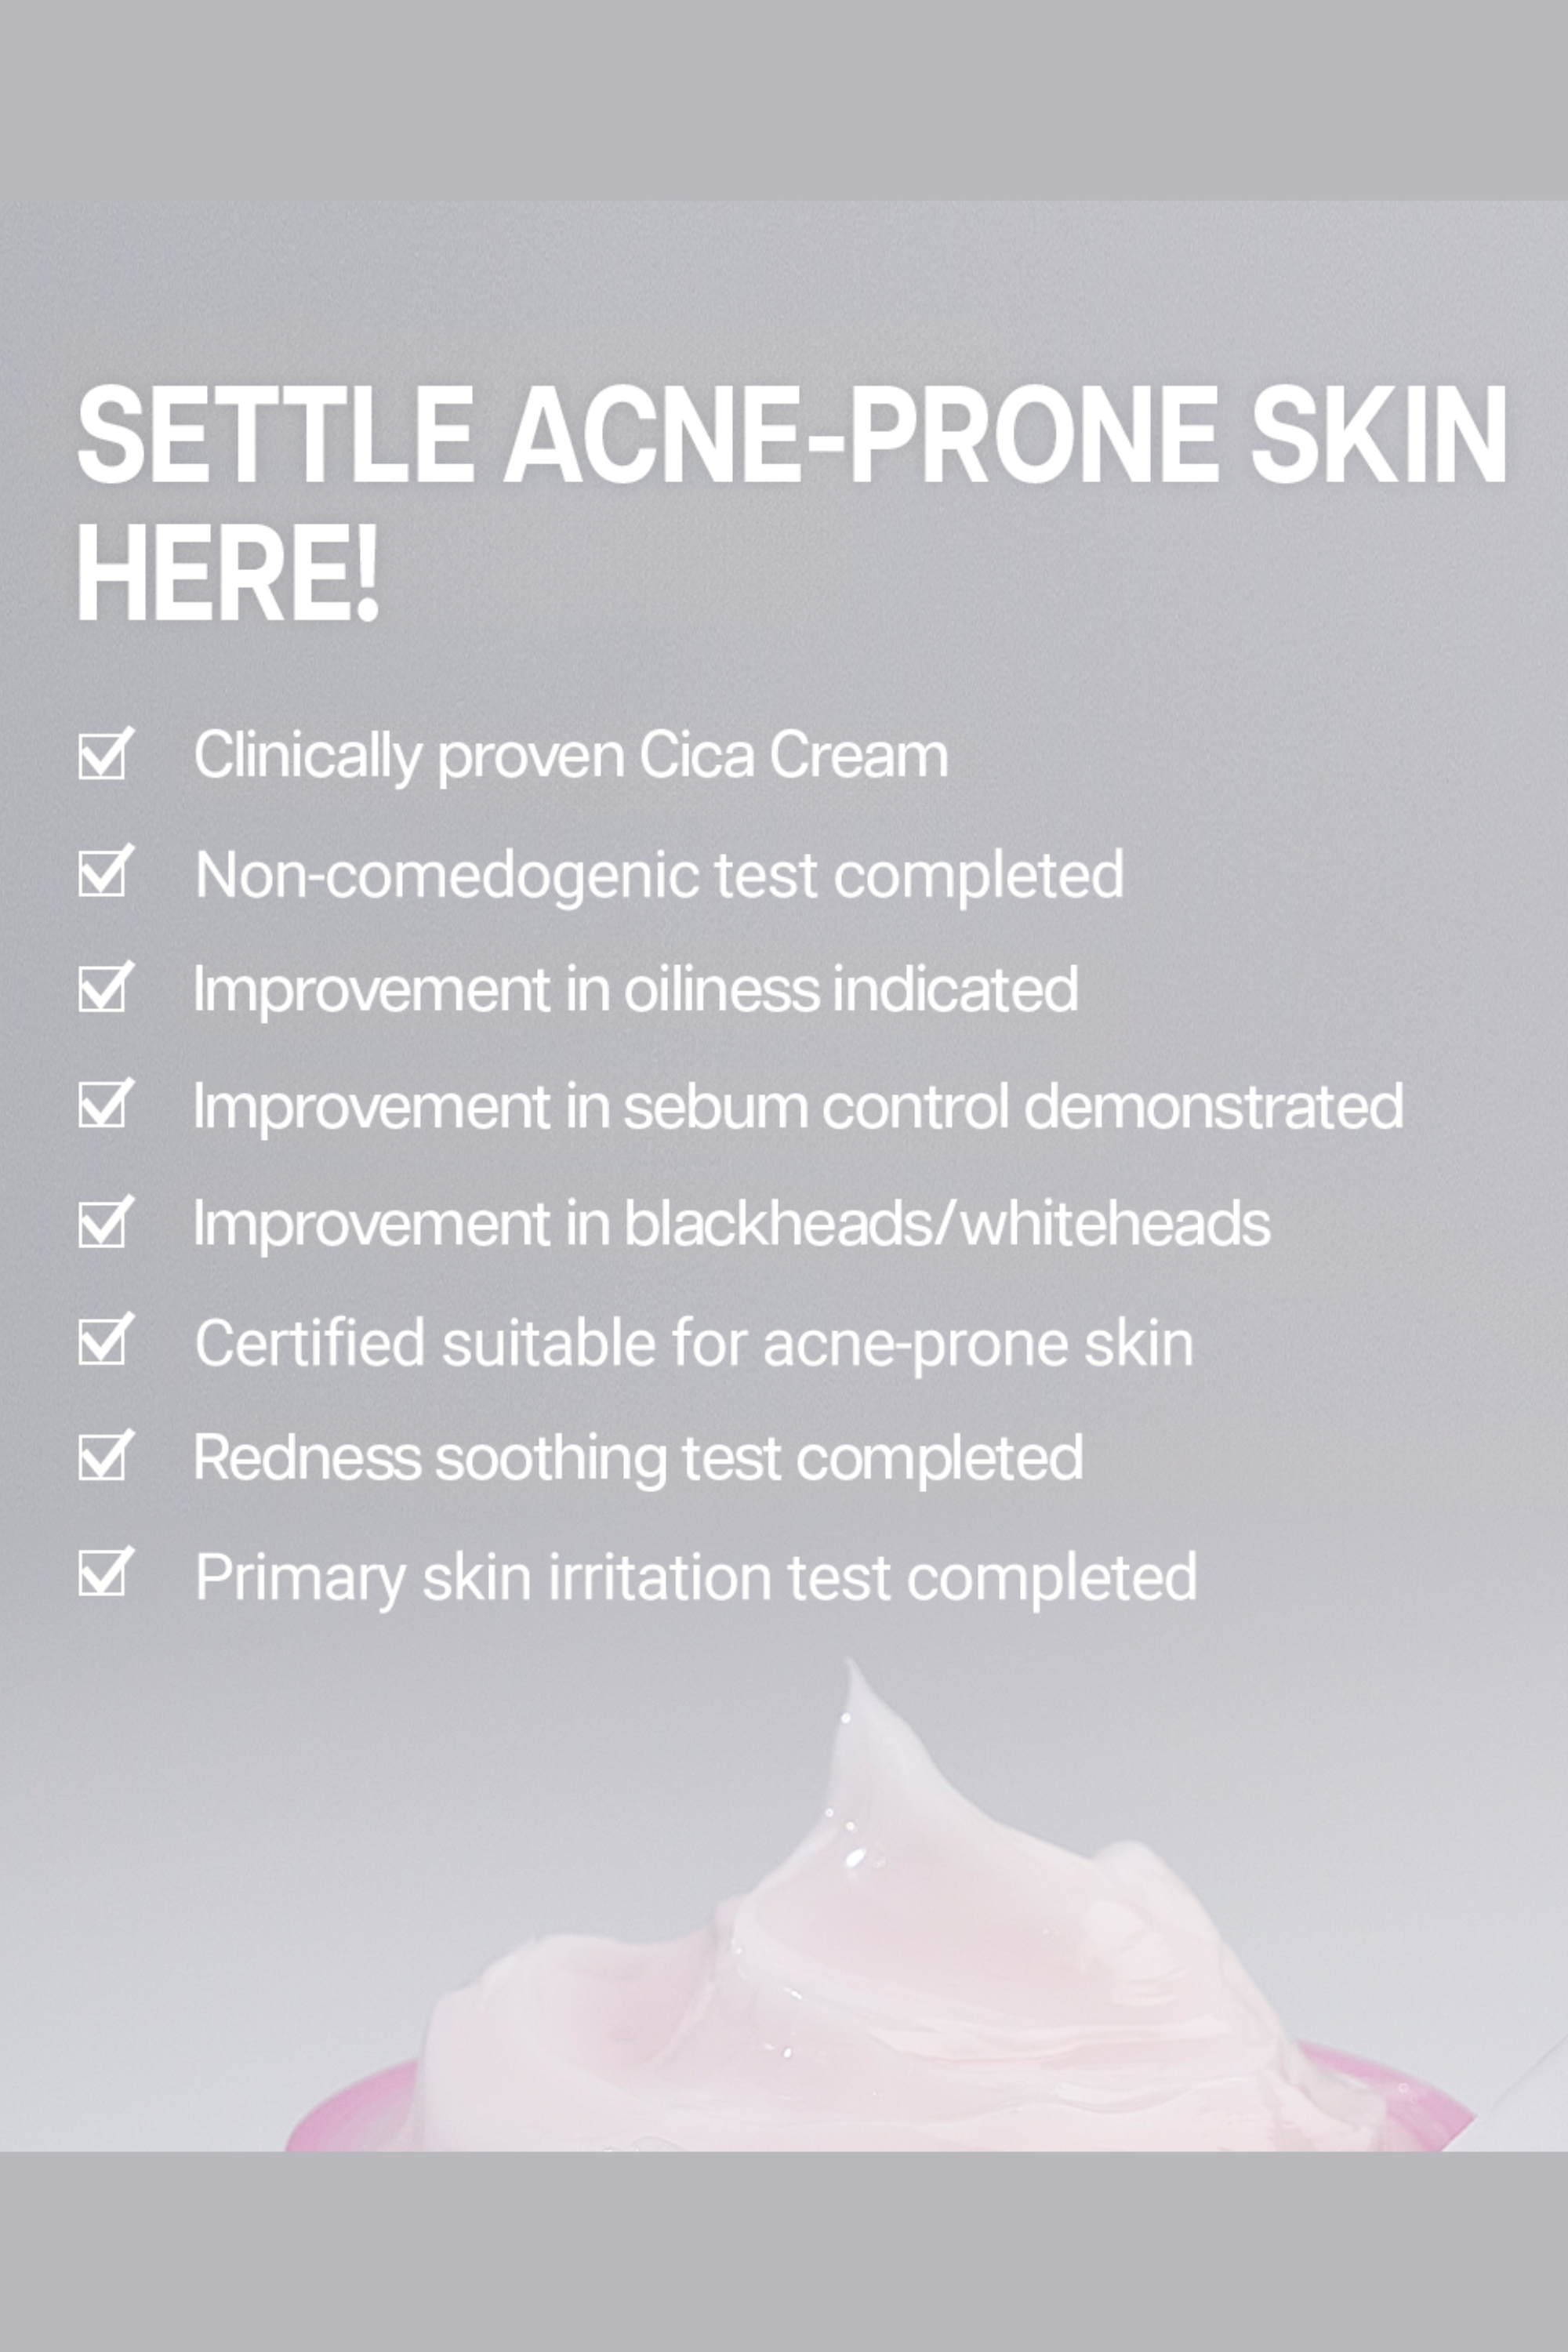 Cica Care Ampoule & Cream Set ($62 Value) - Rovectin Skin Essentials